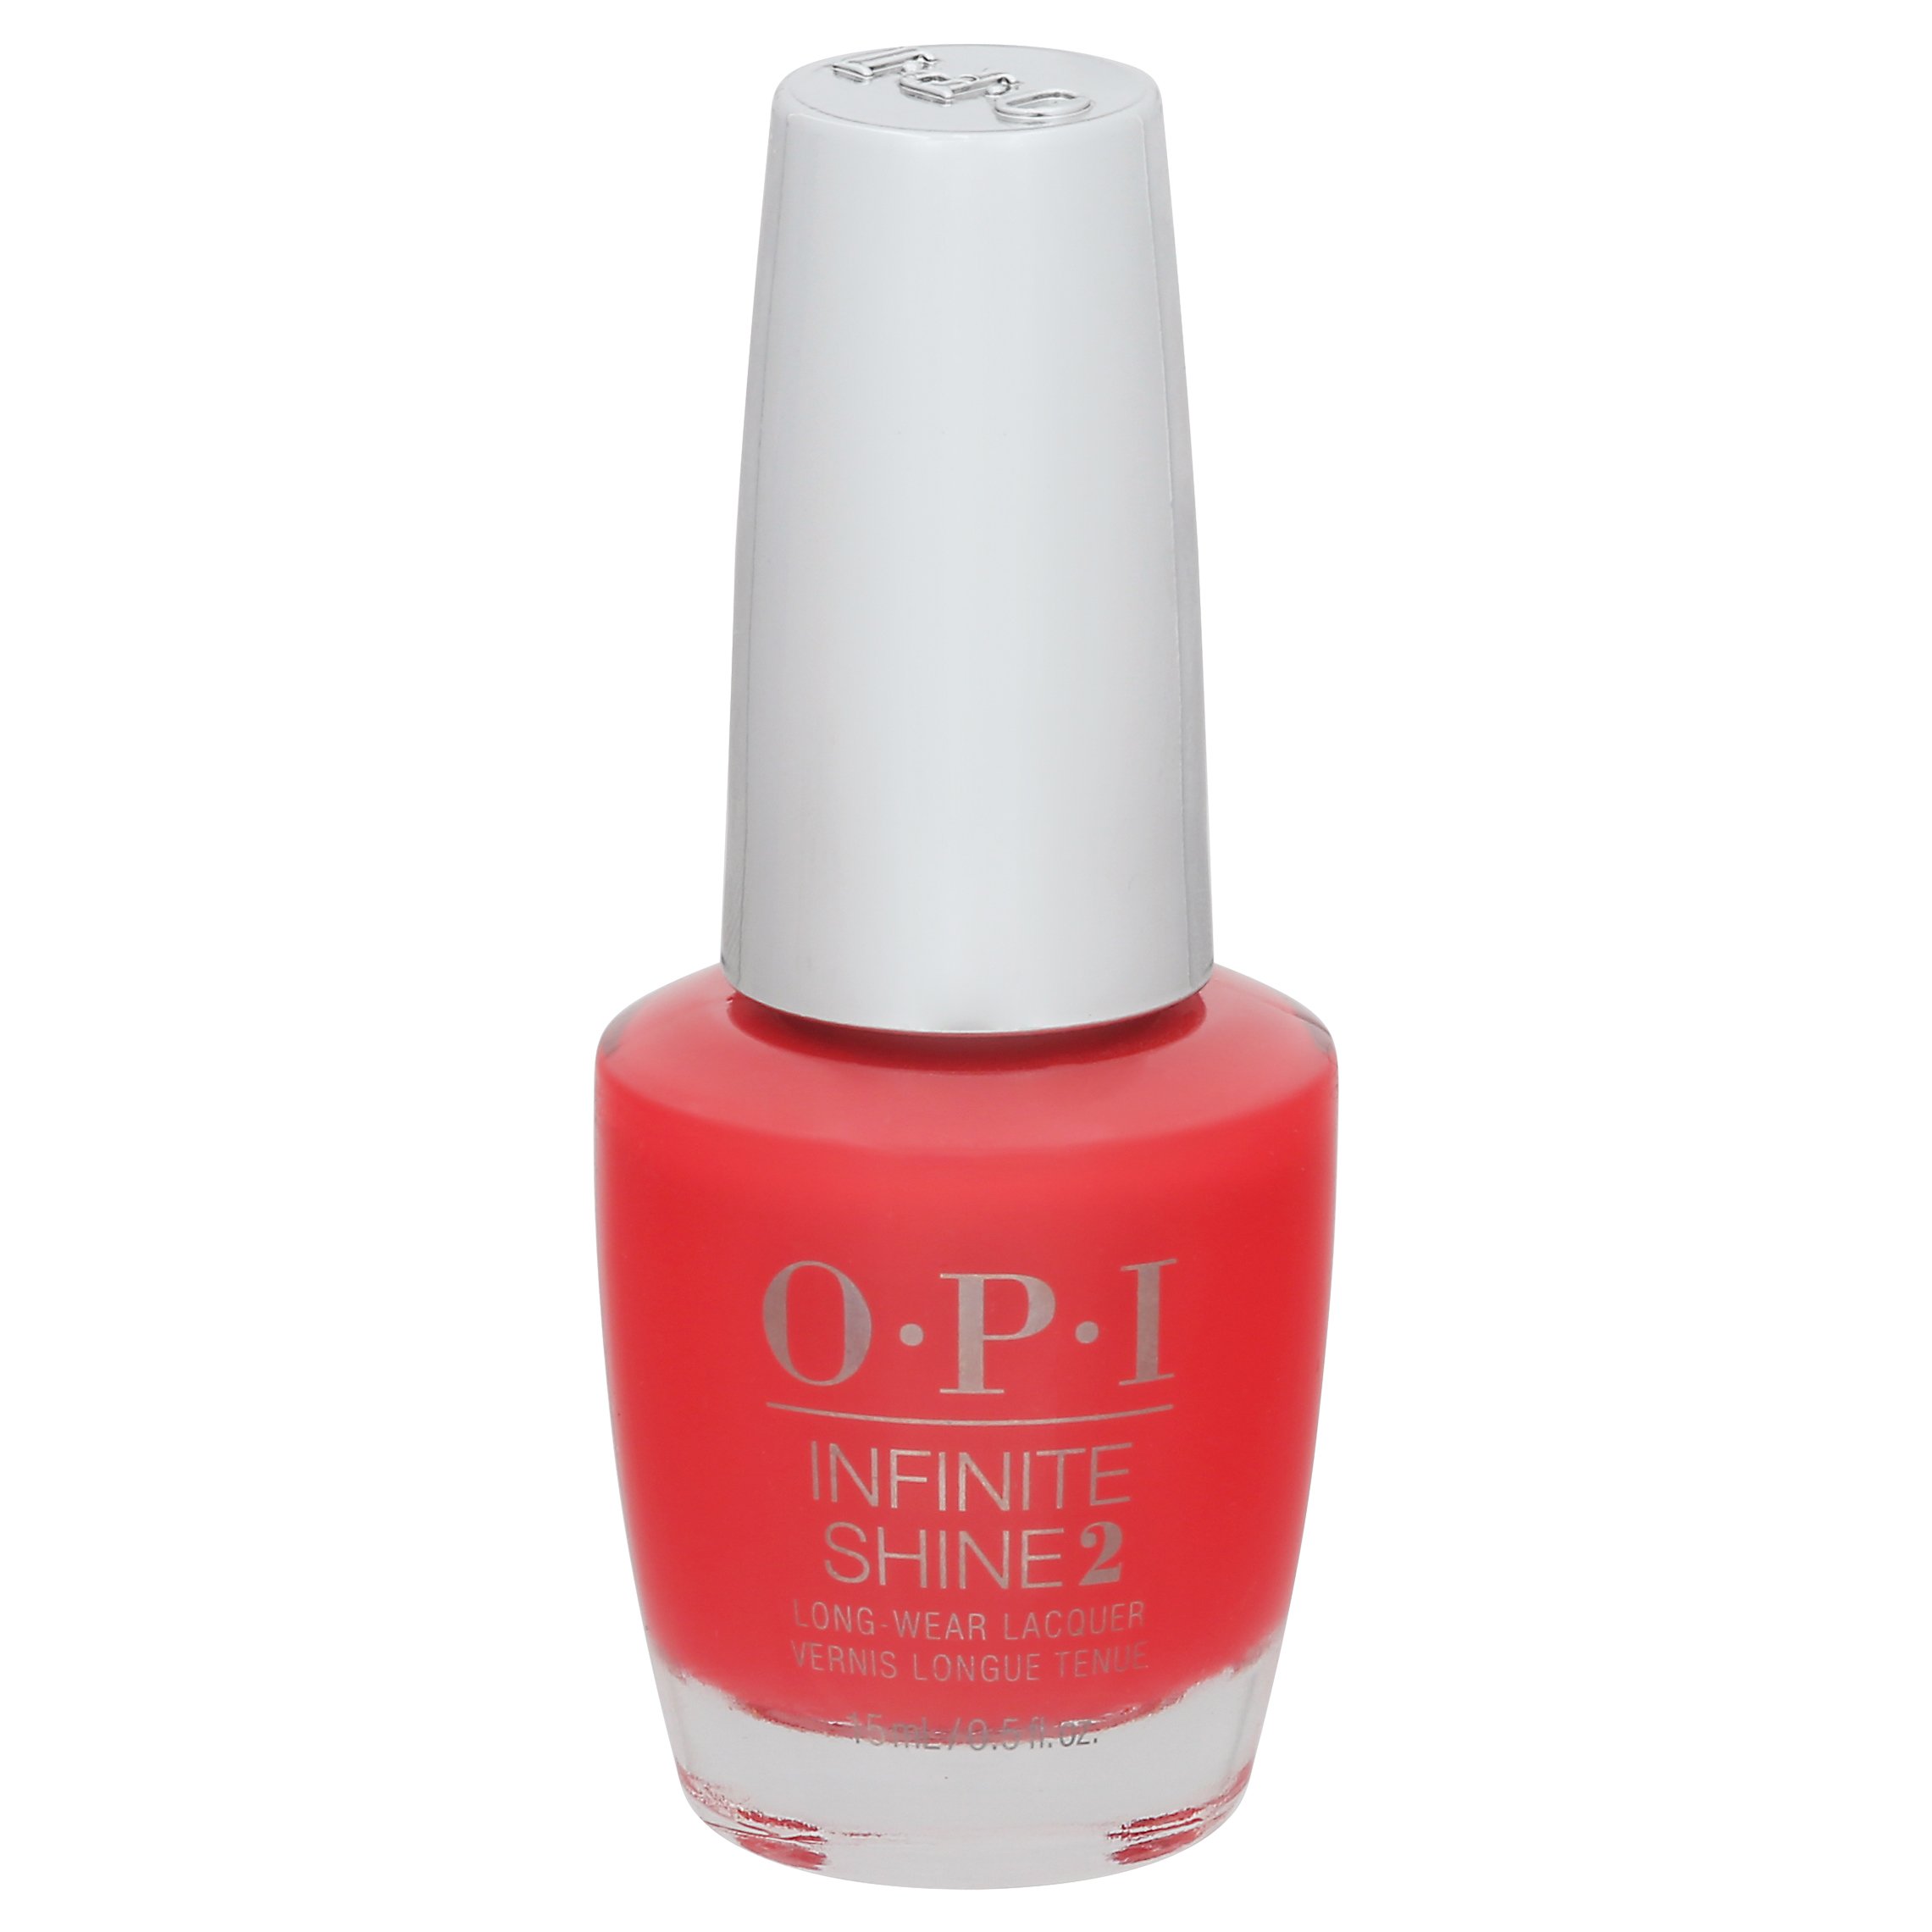 OPI Infinite Shine 2 Nail Polish - Cajun Shrimp - Shop Nail Polish at H-E-B